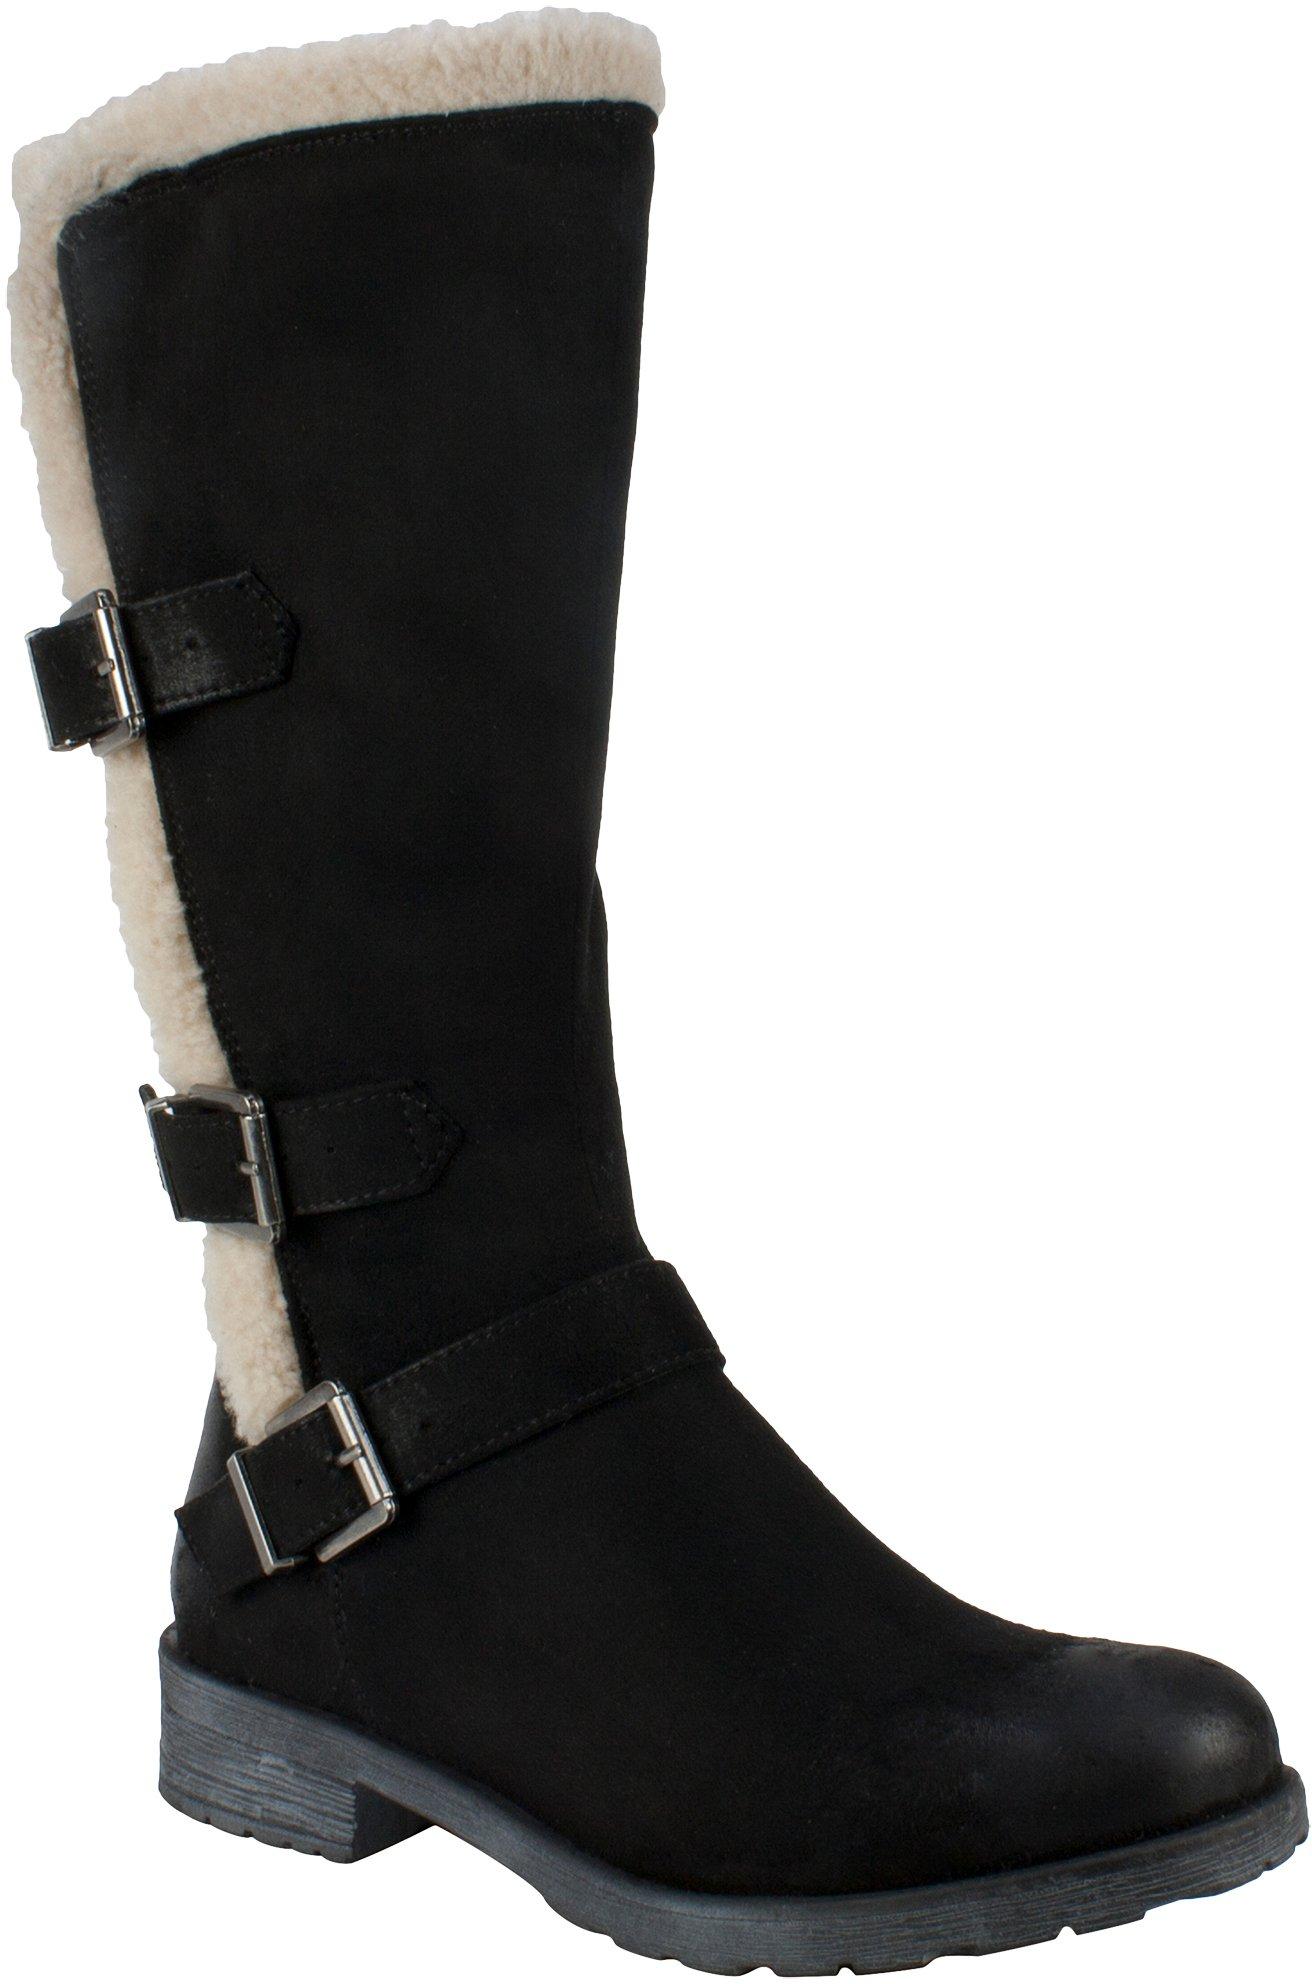 Womens Zipper Tall Boots | Bealls Florida